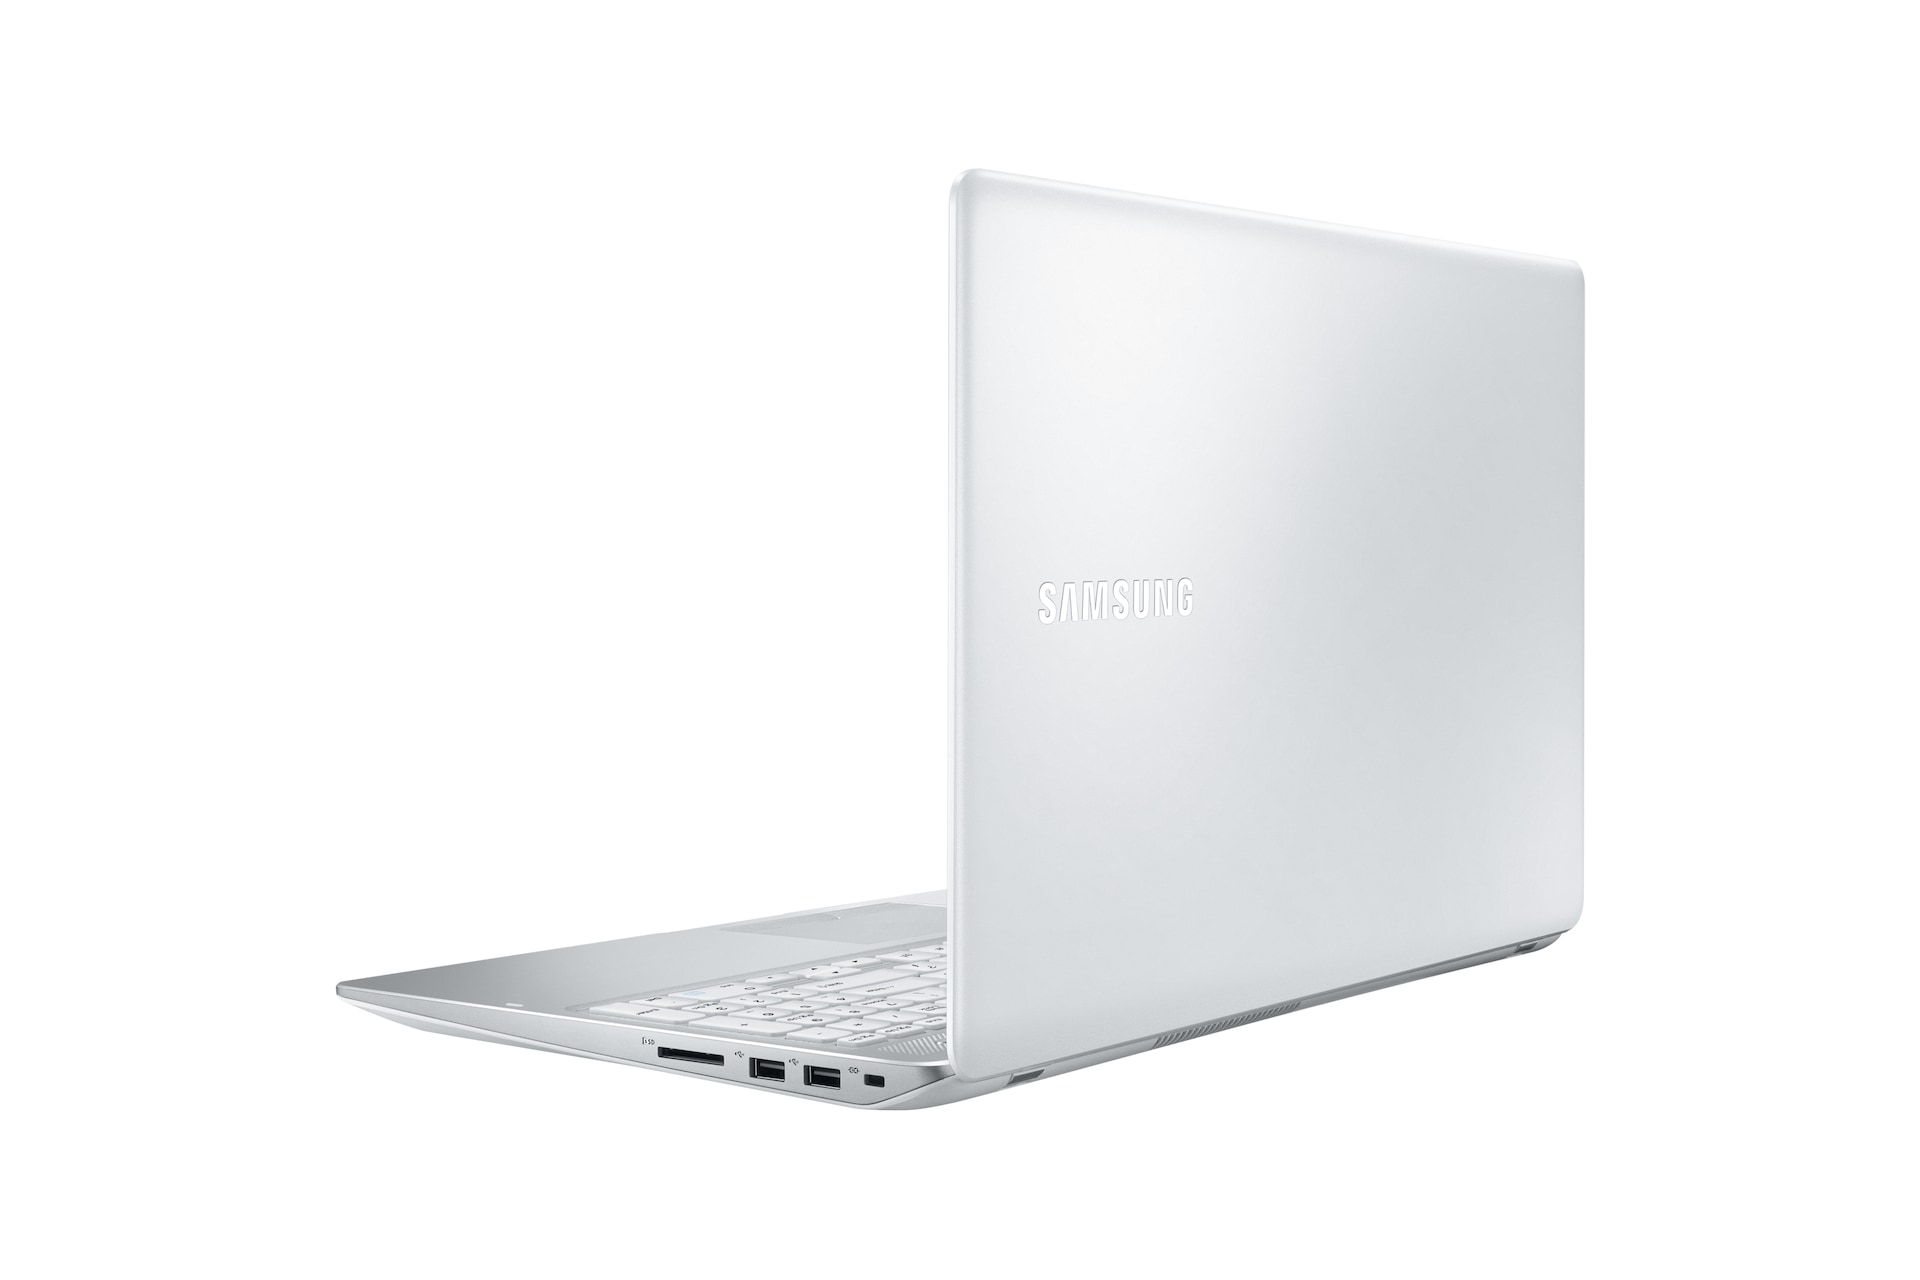 노트북 5 (39.6cm)
NT500R5H-L34J
Core™ i3/128GB SSD